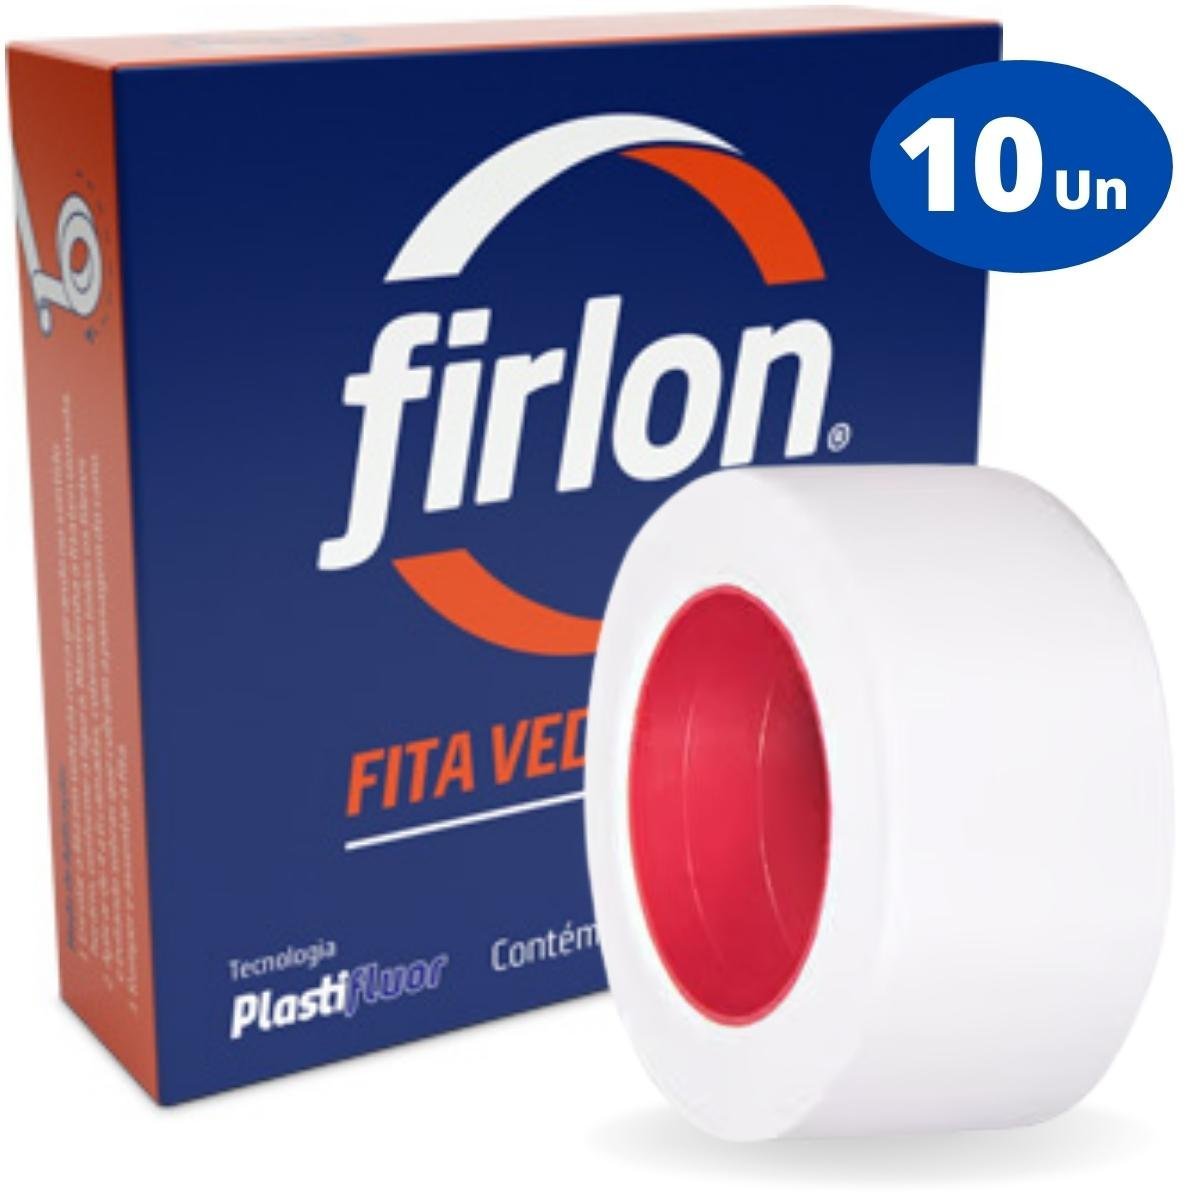 Fita Veda Rosca Teflon 18mm x 50m | Firlon | Kit 10 Un